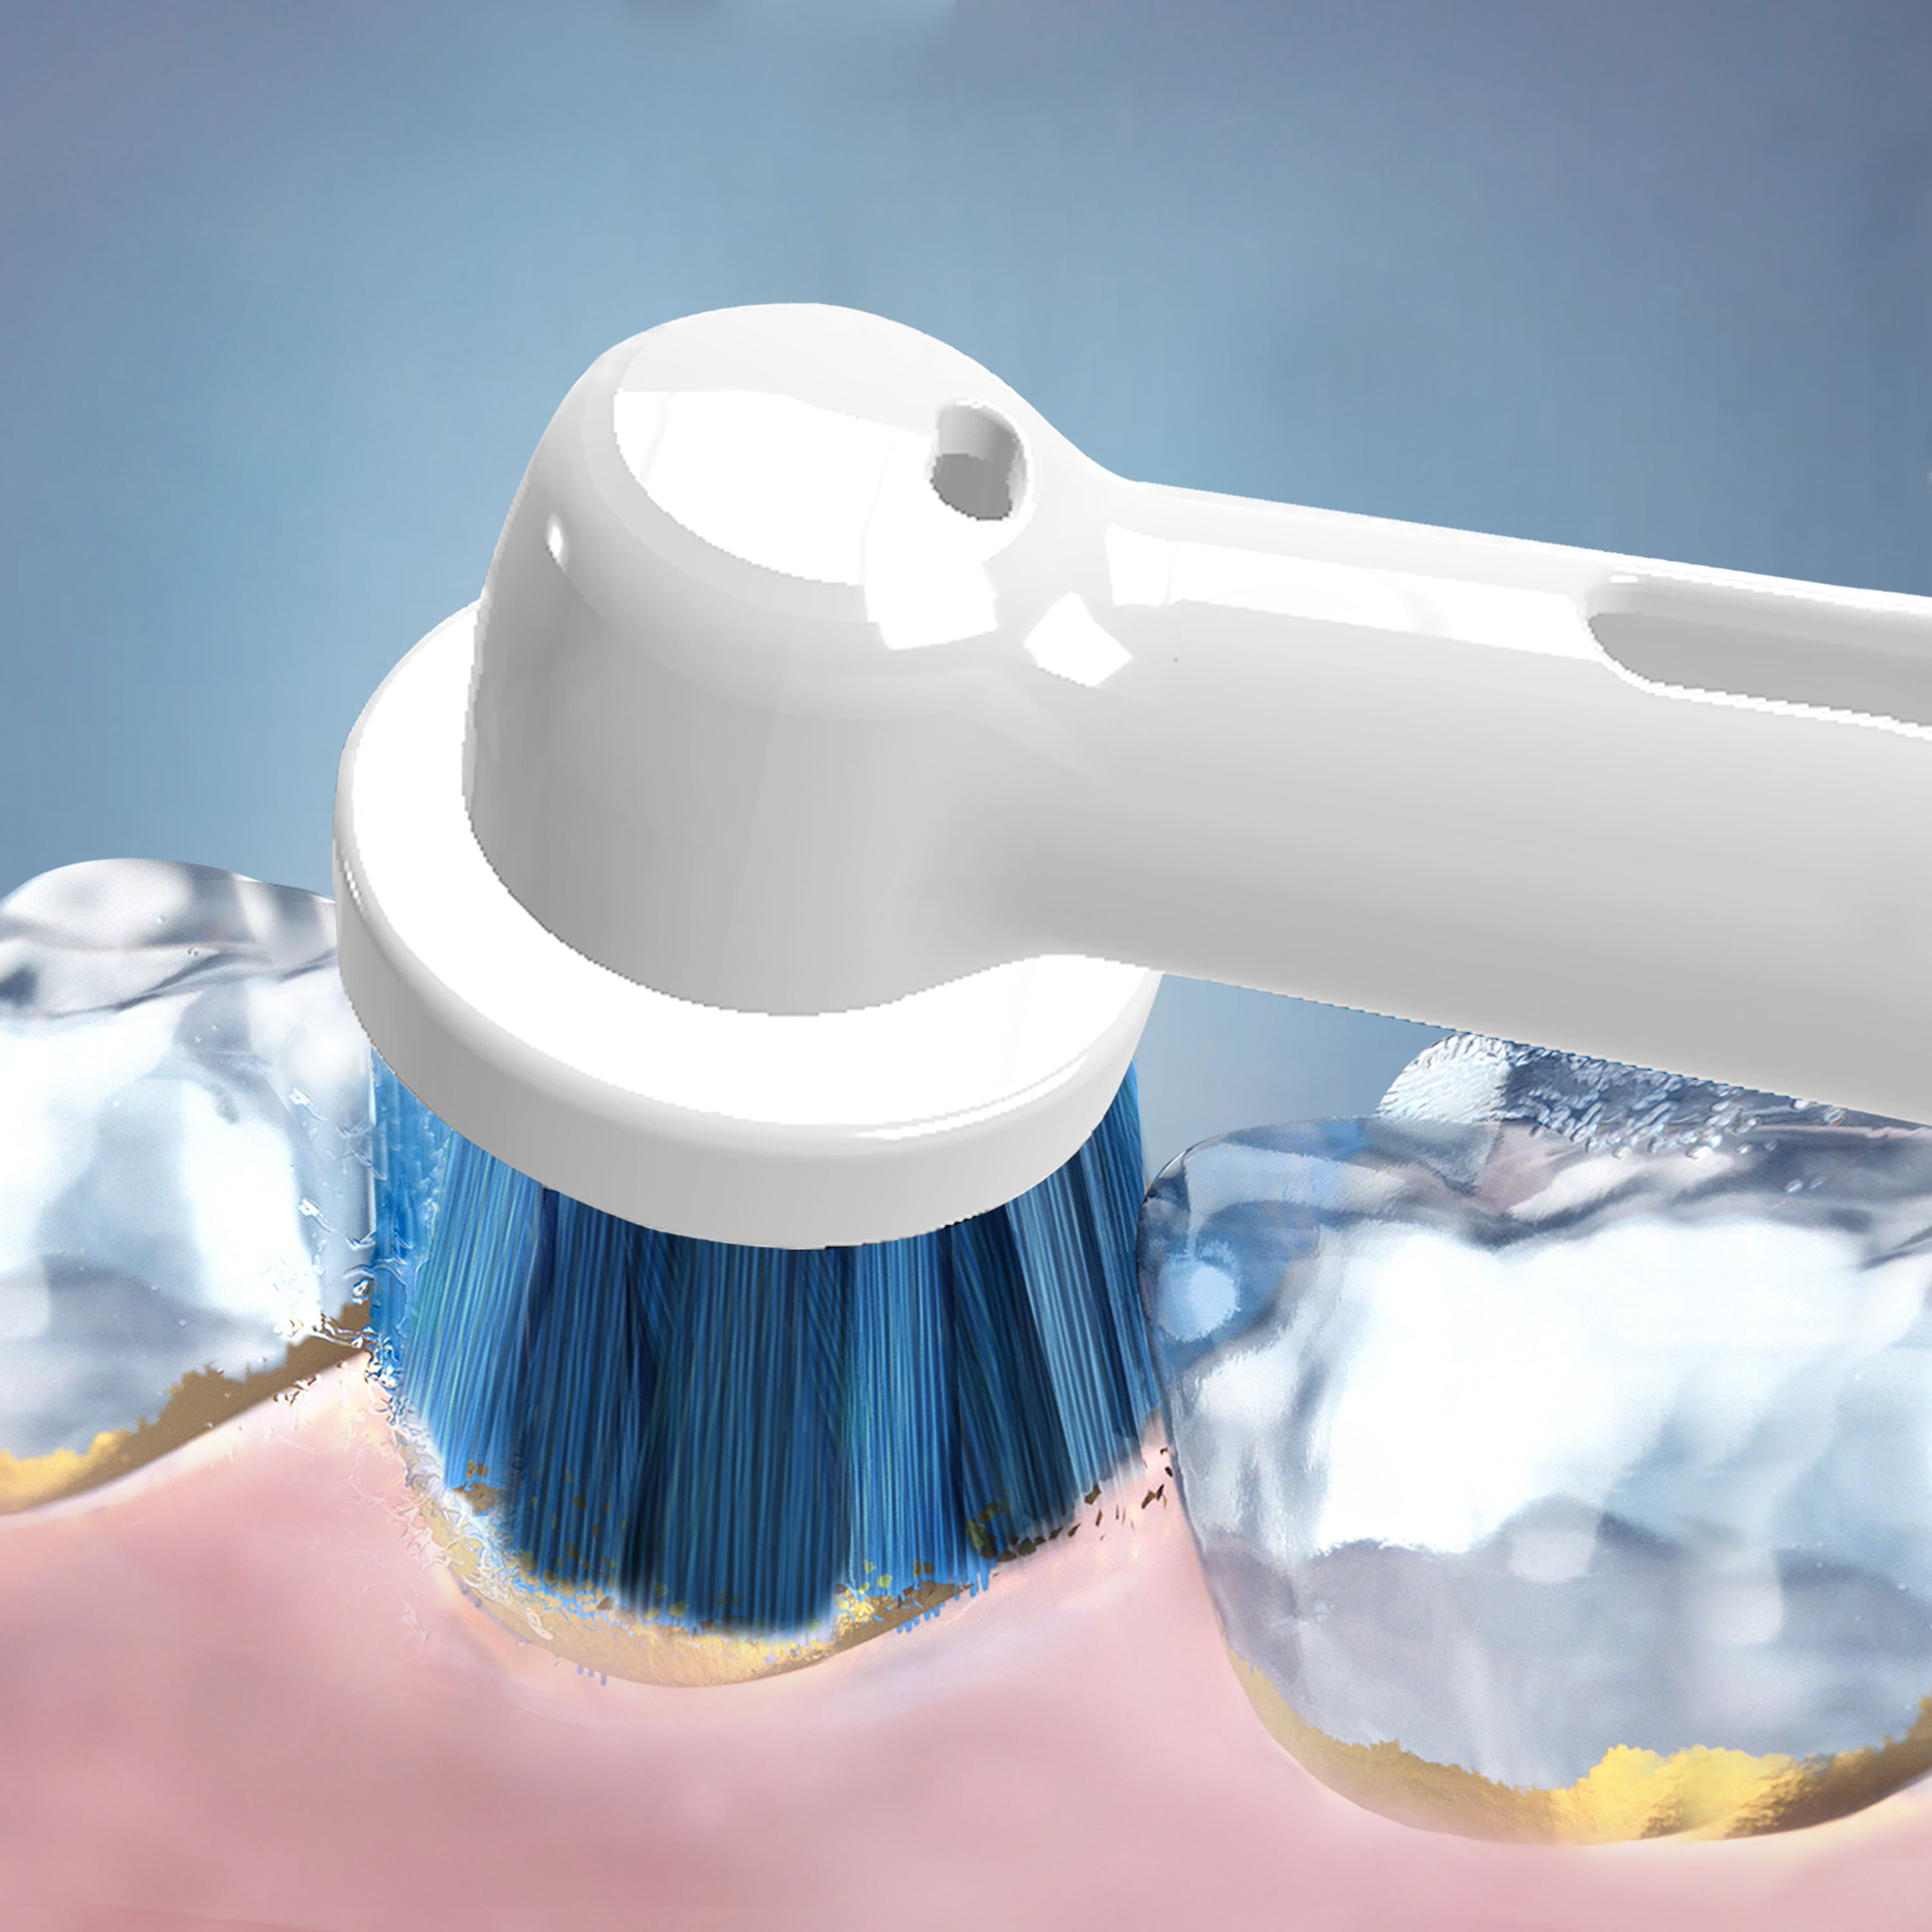 Cepillos dentales: Recambio Oral-B Dual Clean 3 Cabezal Repuesto Original  Cepillo Dientes Eléctrico